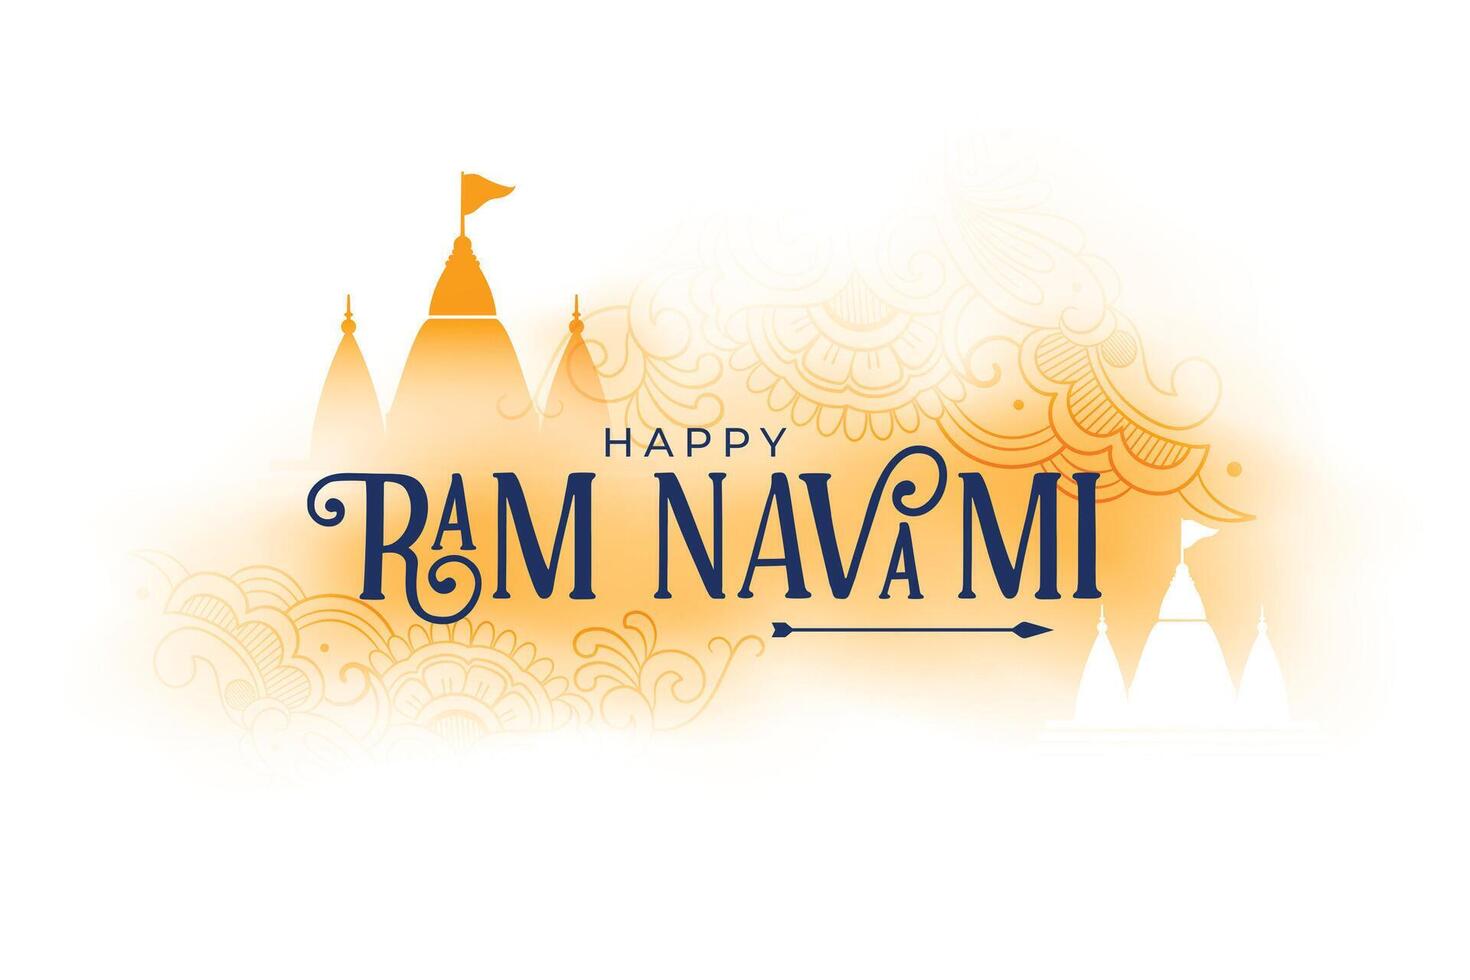 Seigneur RAM navami Festival vœux bénédiction carte avec les temples vecteur